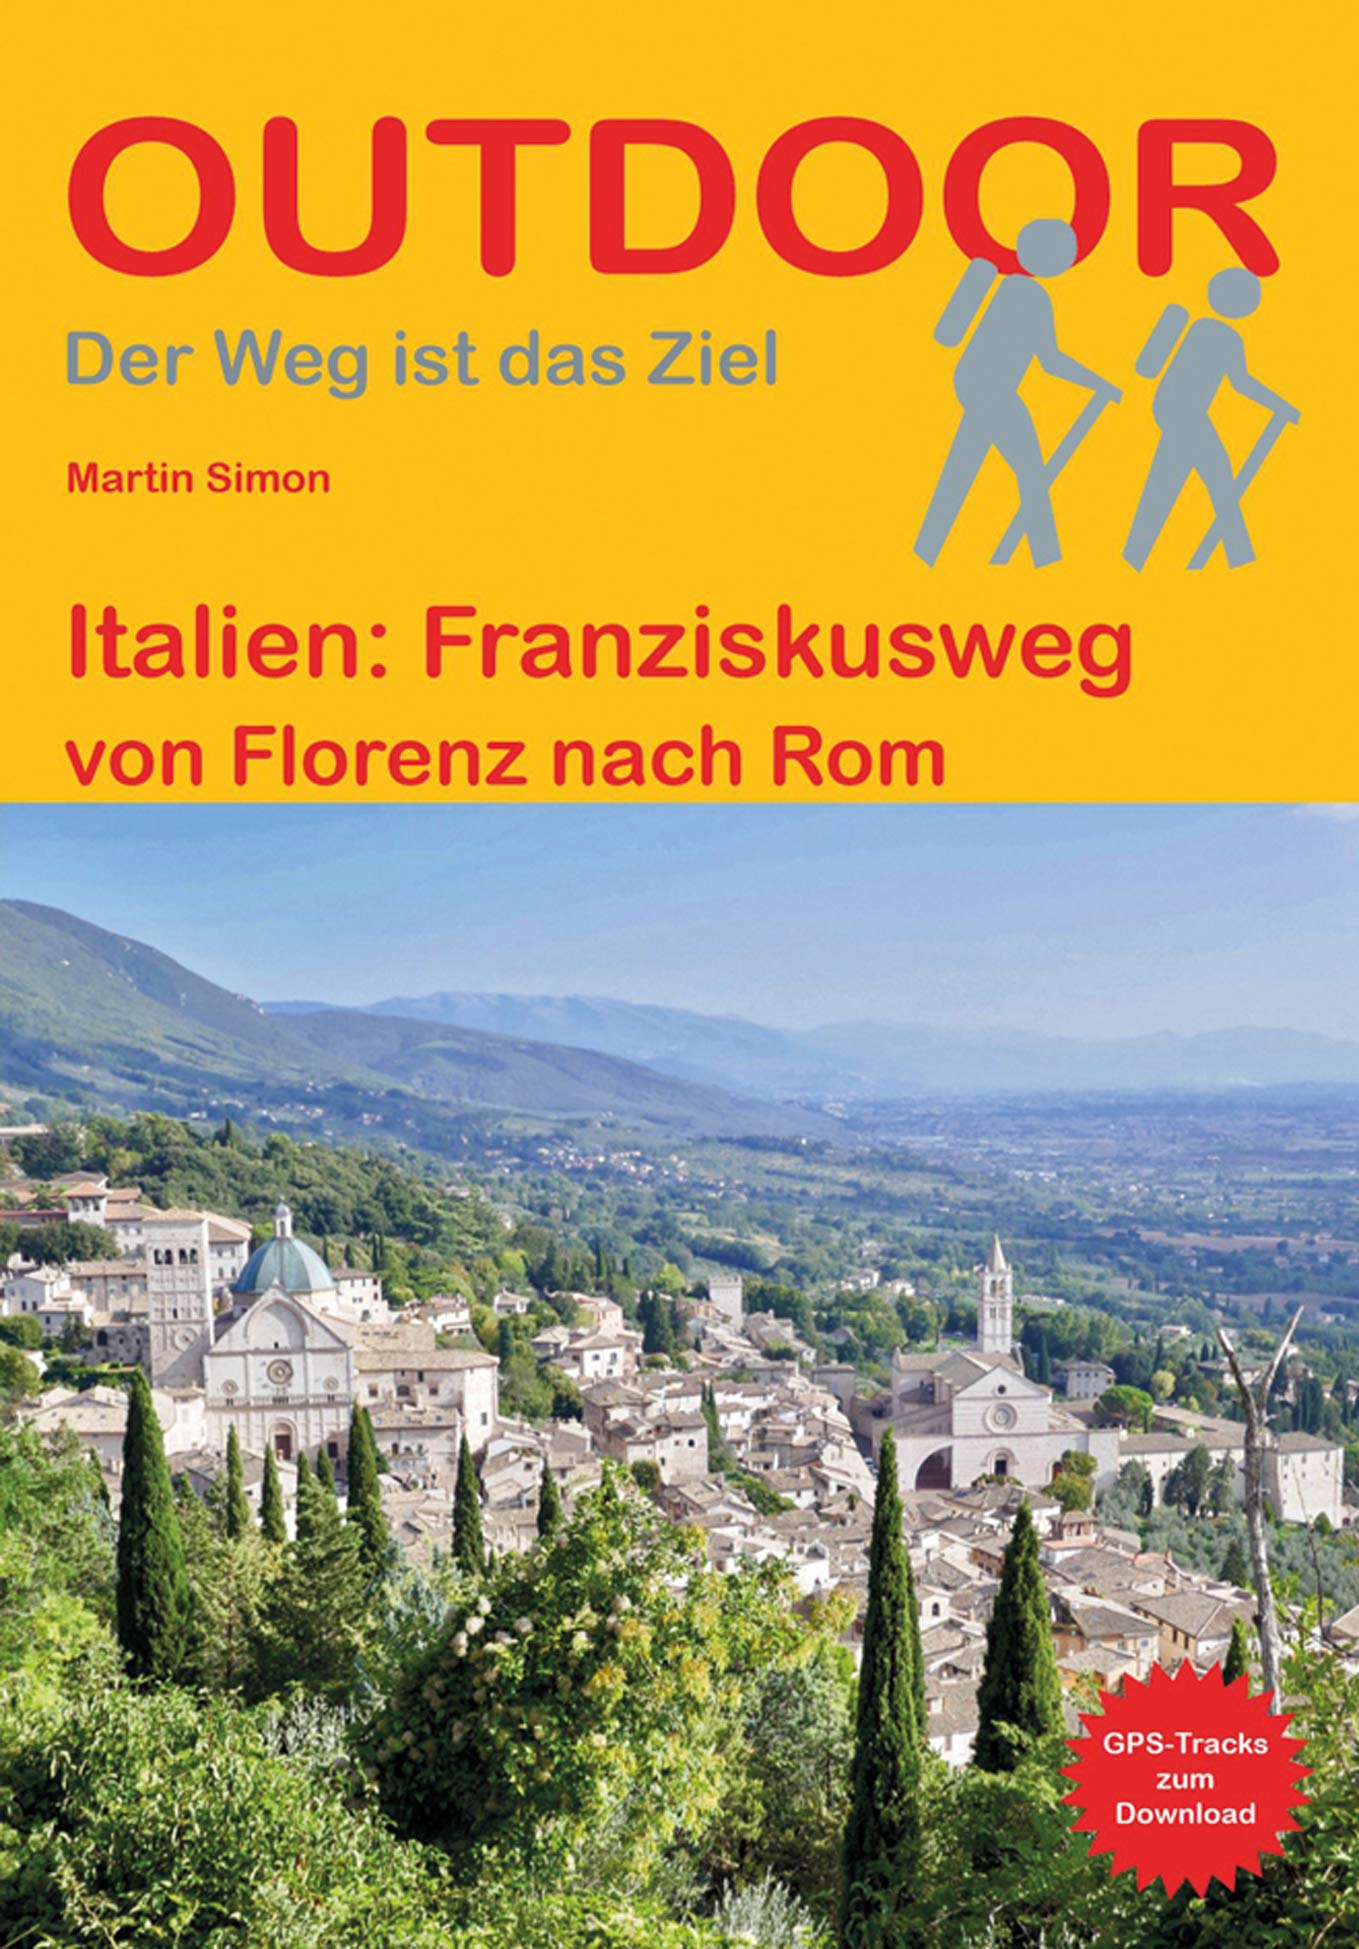 Franziskusweg : Italien | wandelgids (Duitstalig) 9783866866324  Conrad Stein Verlag Outdoor - Der Weg ist das Ziel  Lopen naar Rome, Meerdaagse wandelroutes, Wandelgidsen Midden-Italië